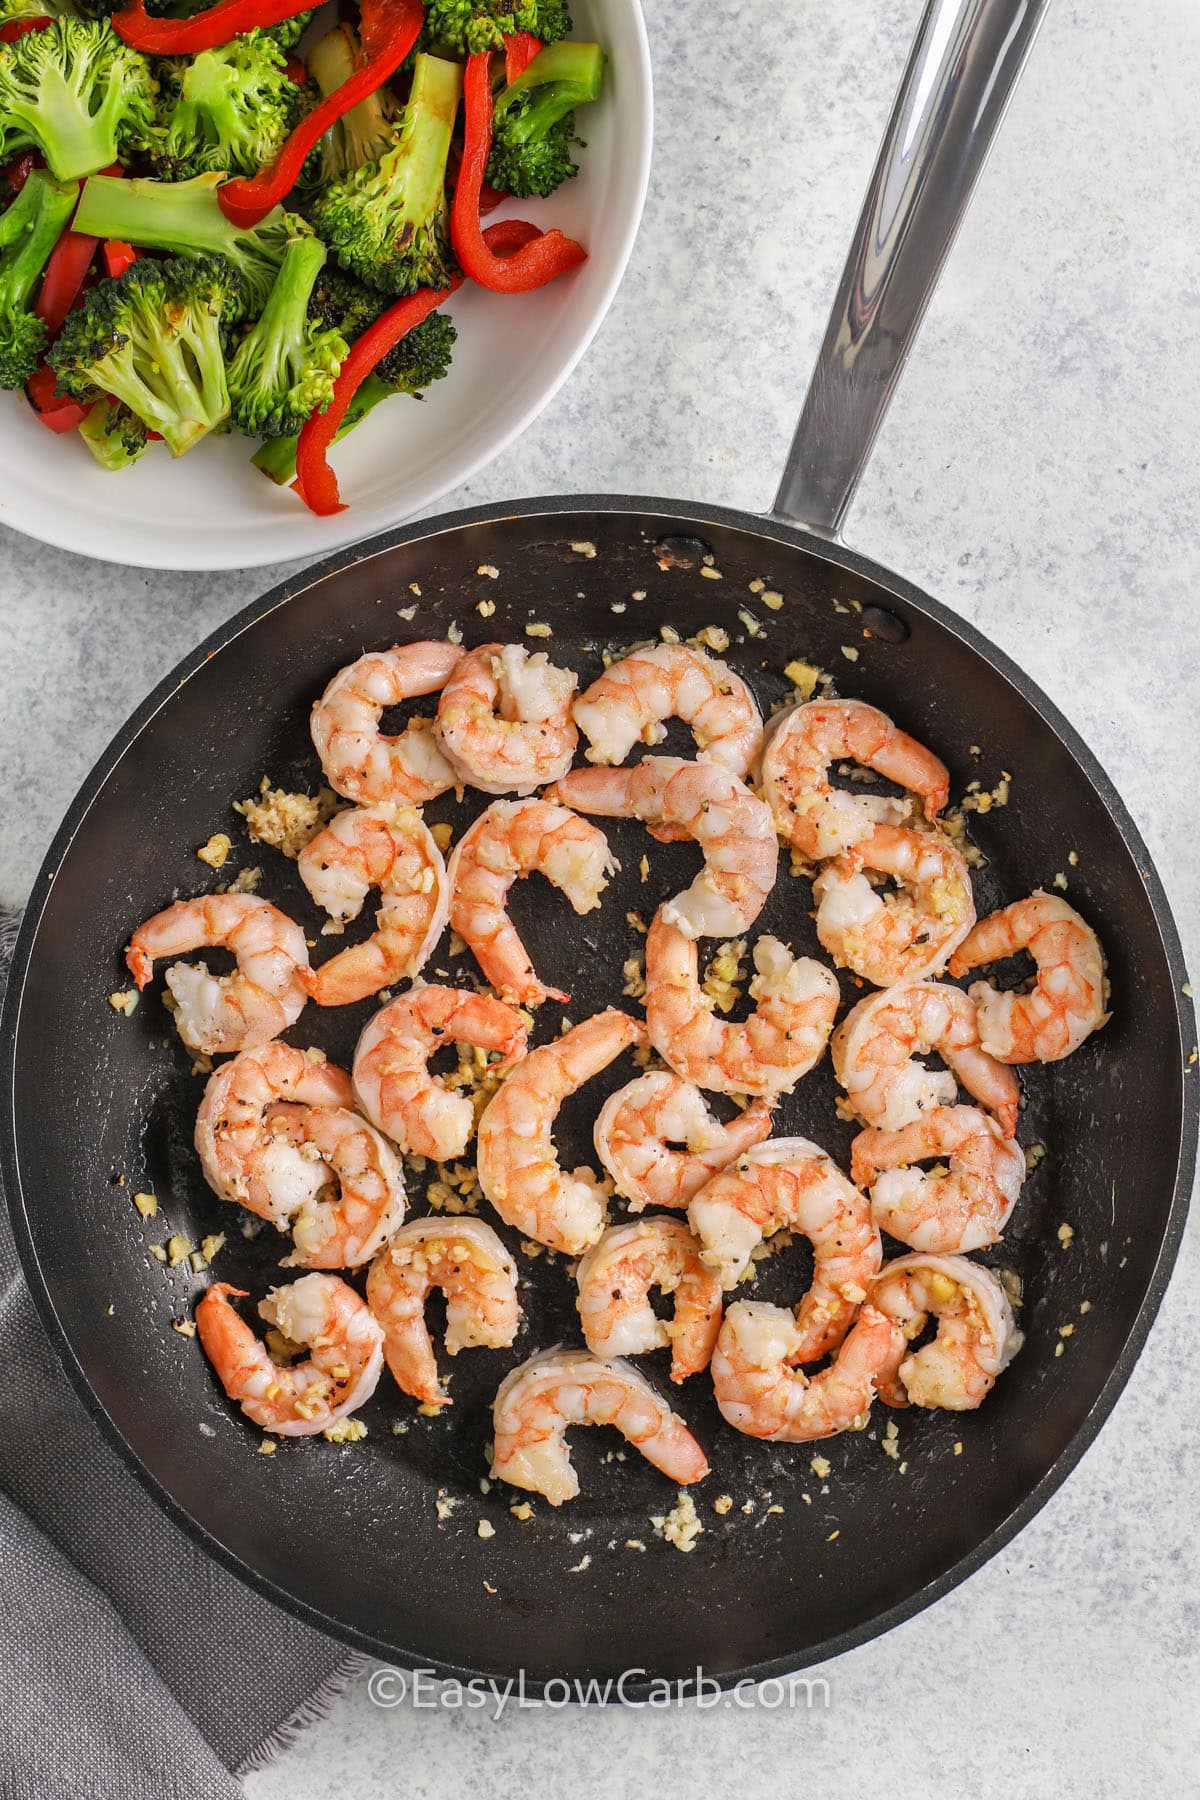 cooking shrimp to make Shrimp and Broccoli Recipe